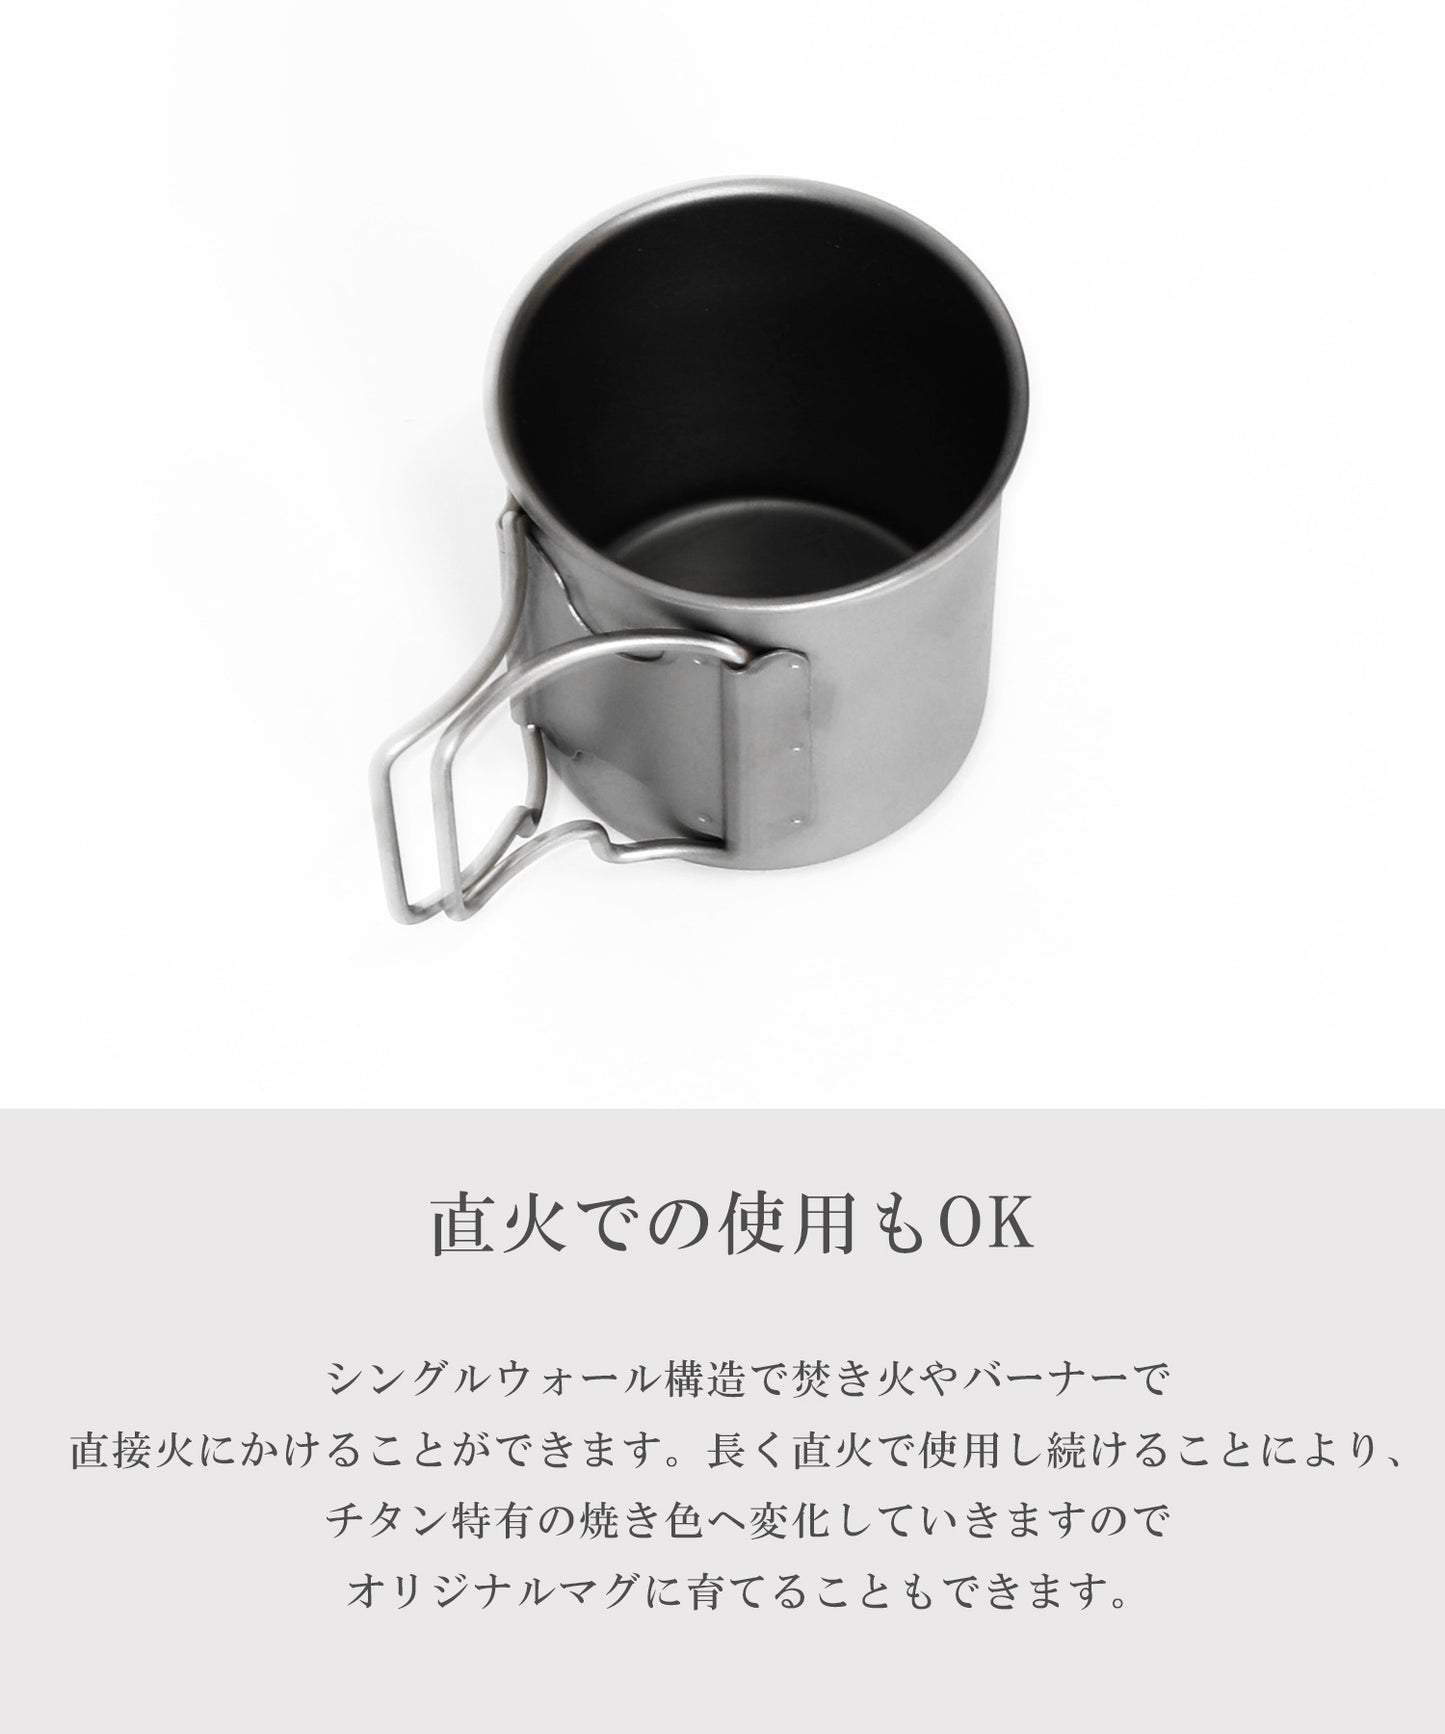 【S'more /Titanium Mug 】チタンマグカップ220ml/300ml